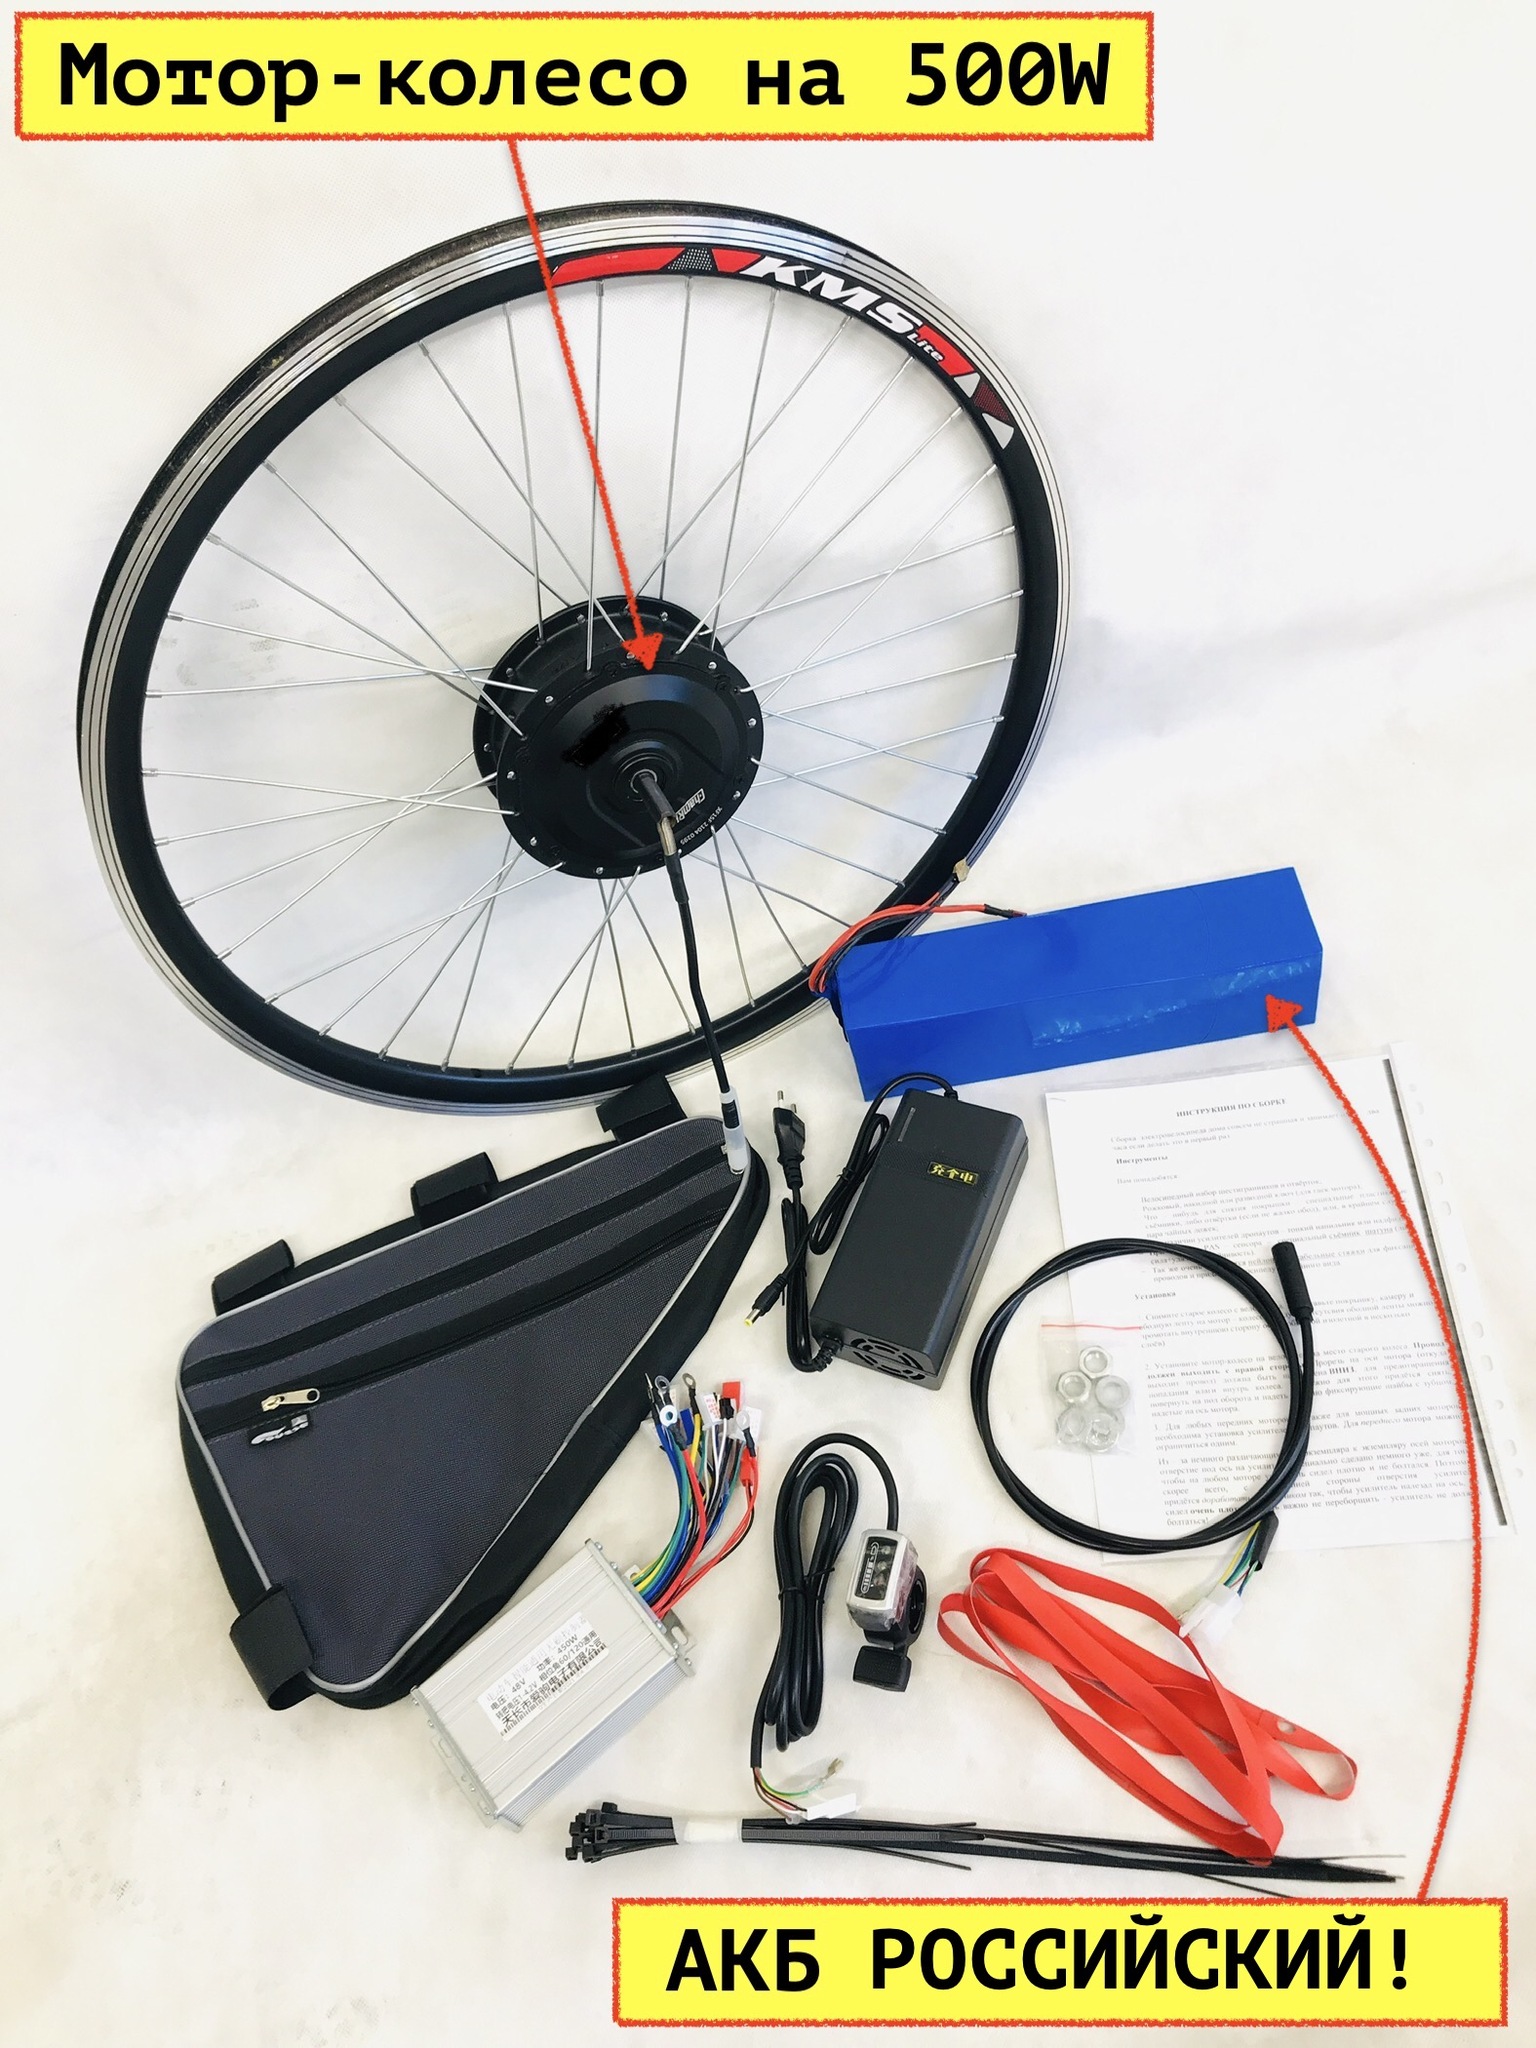 Самодельное асинхронное мотор-колесо для велосипеда как задел для стартапа / Хабр